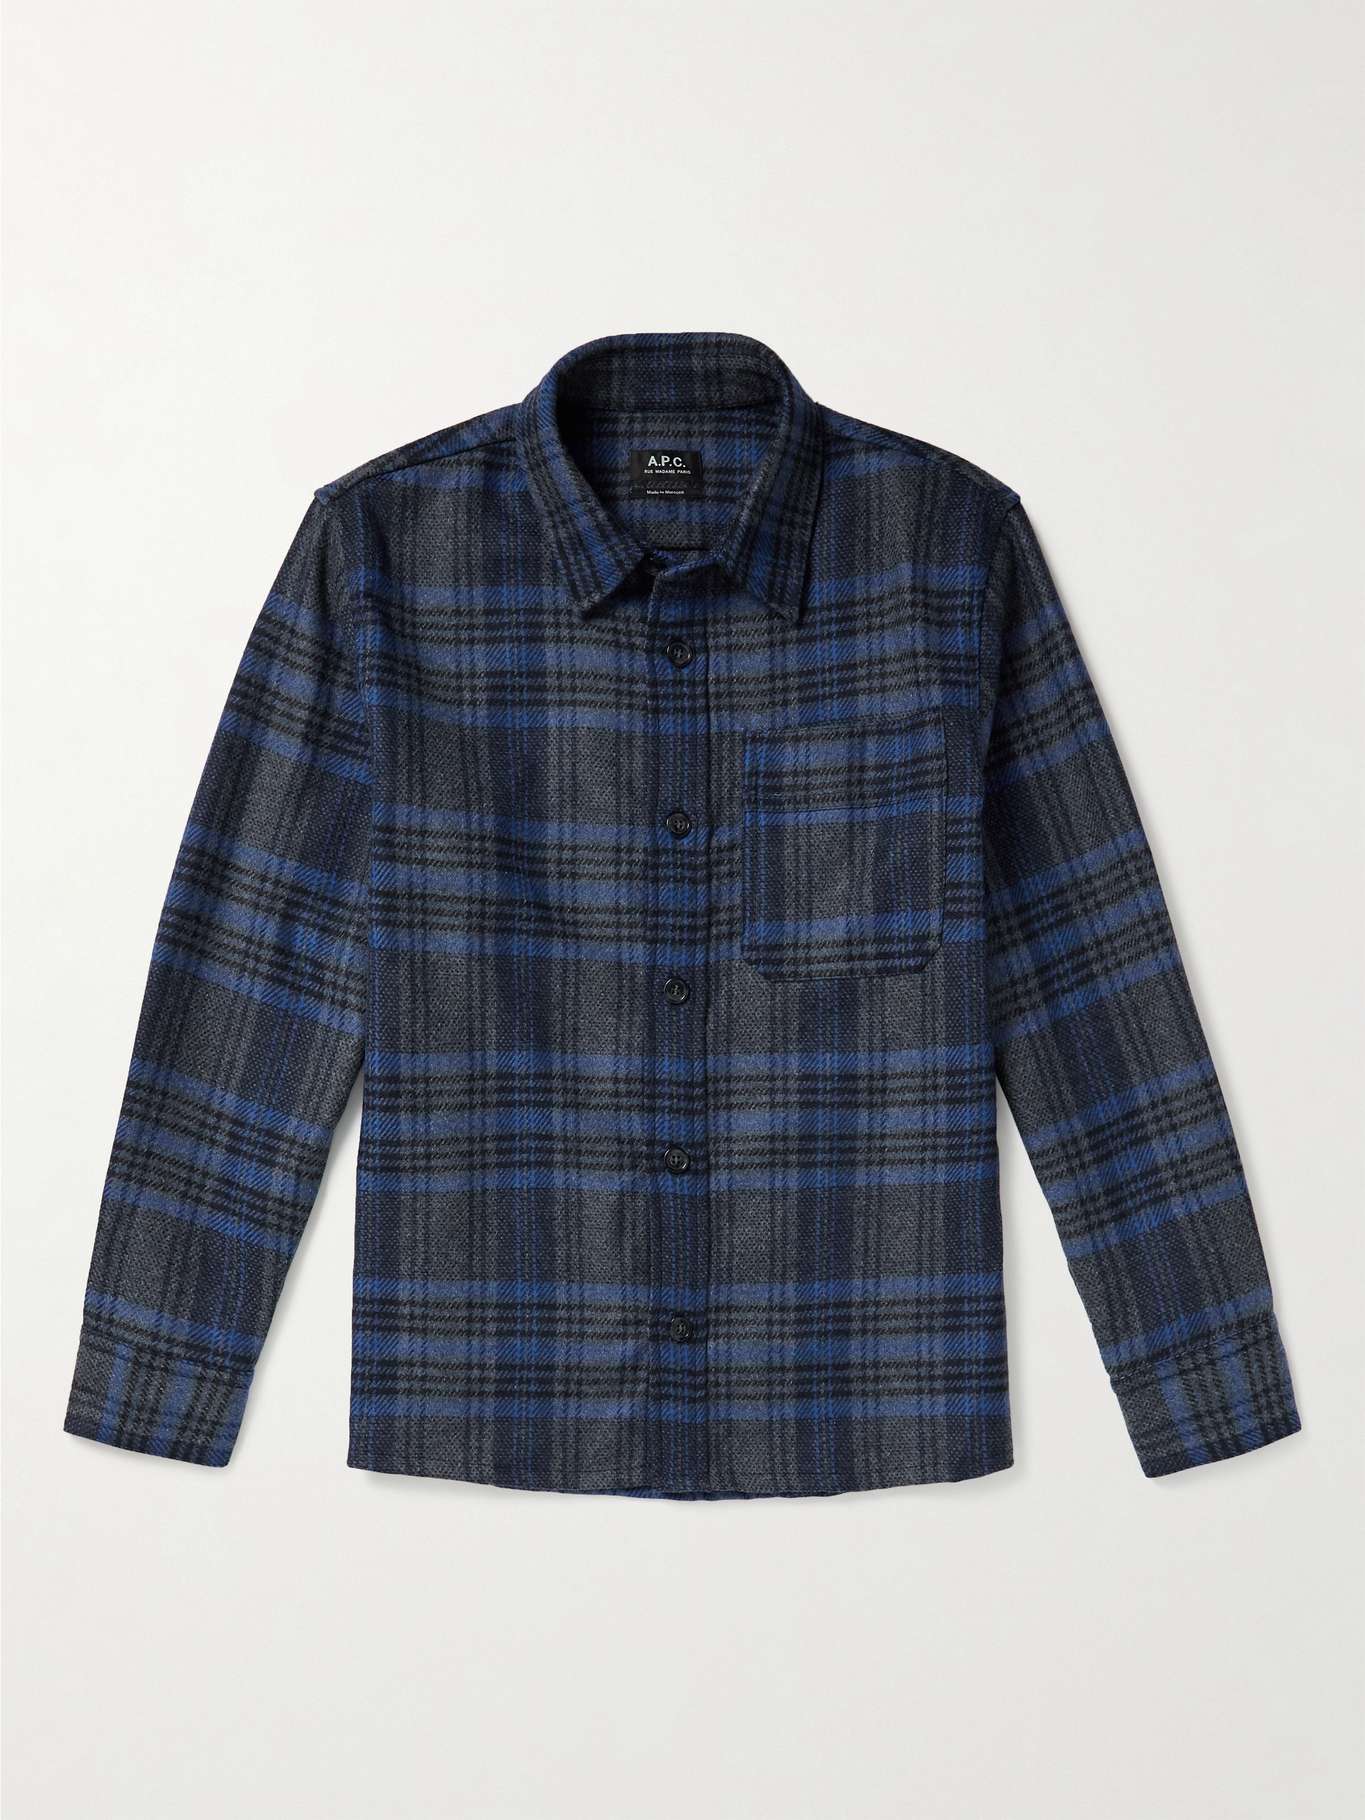 A.P.C. Basile Wool-Blend Flannel Overshirt for Men | MR PORTER